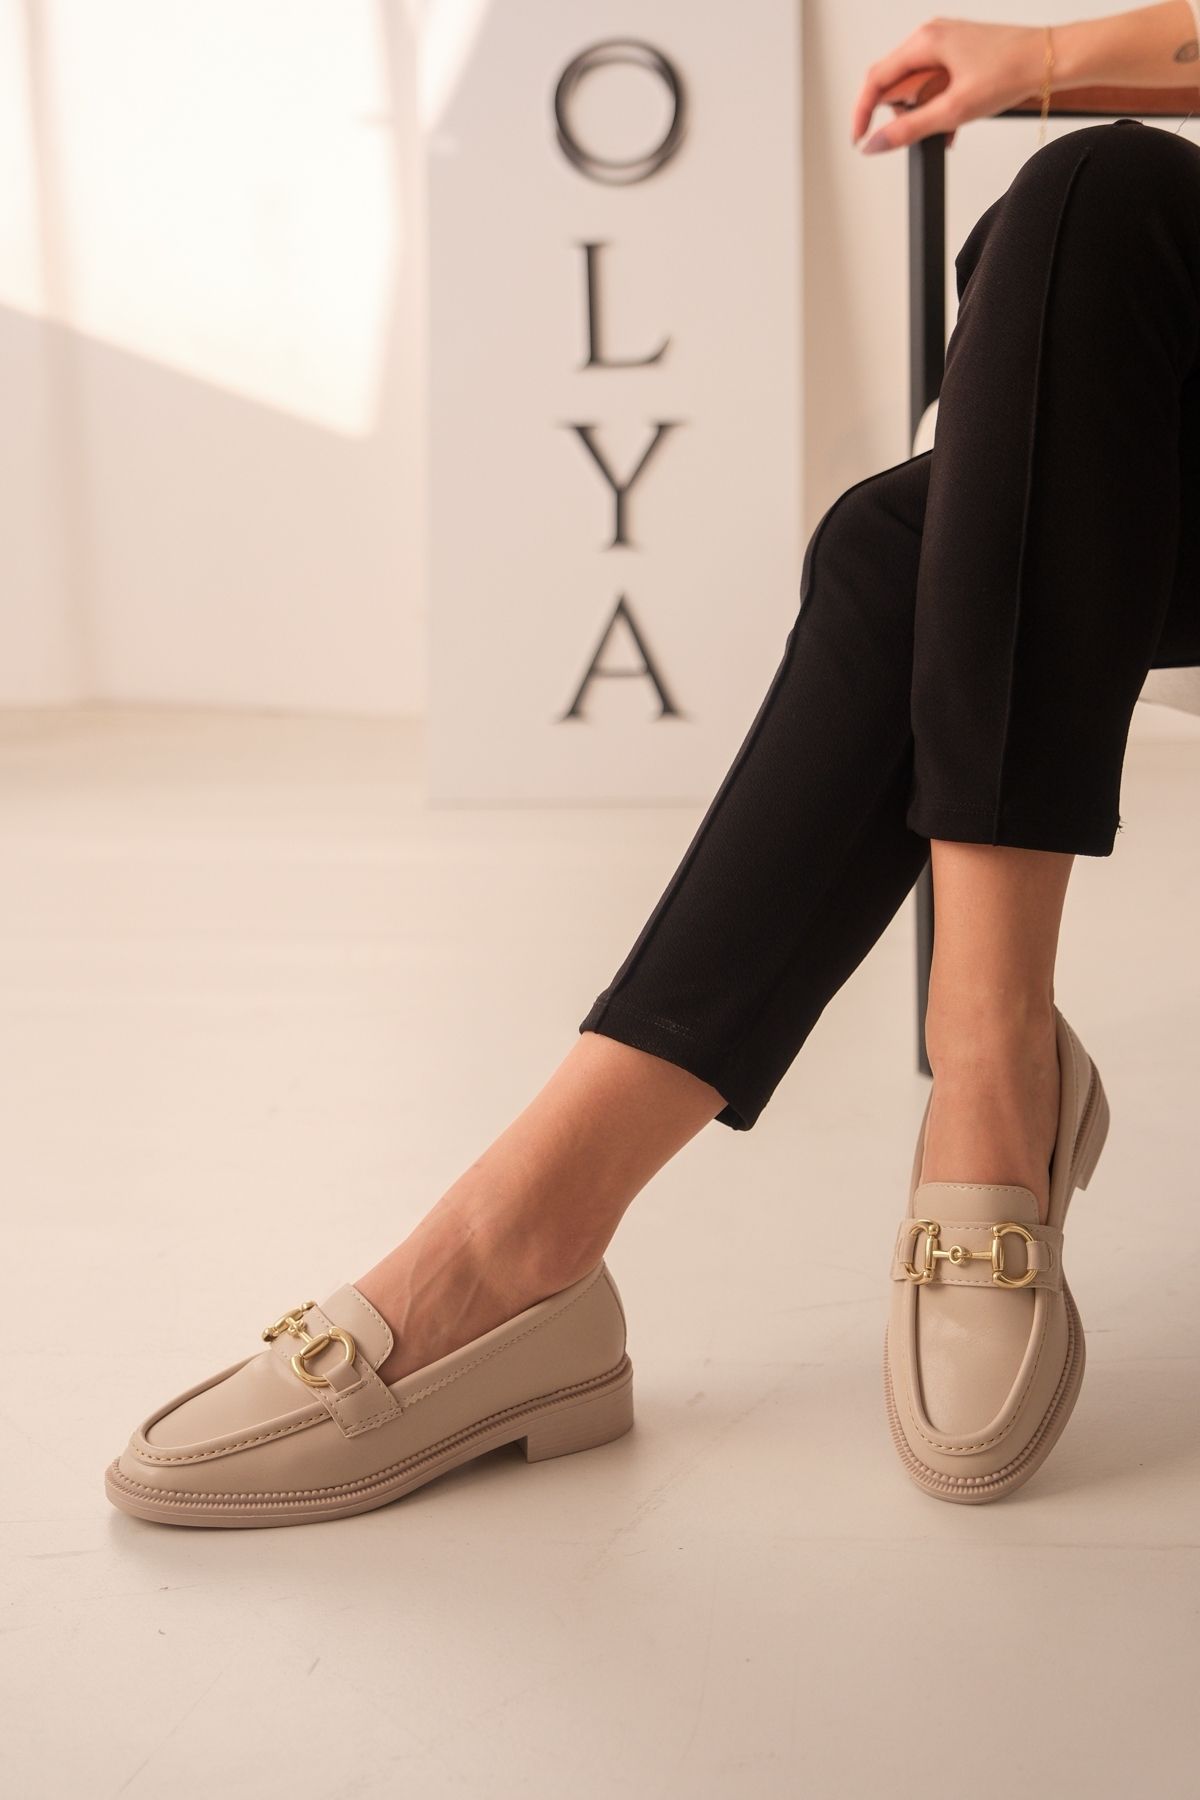 DİVOLYA Riri Bej Gold Tokalı Deri İnce Taban (3cm) Loafer Kadın Ayakkabı